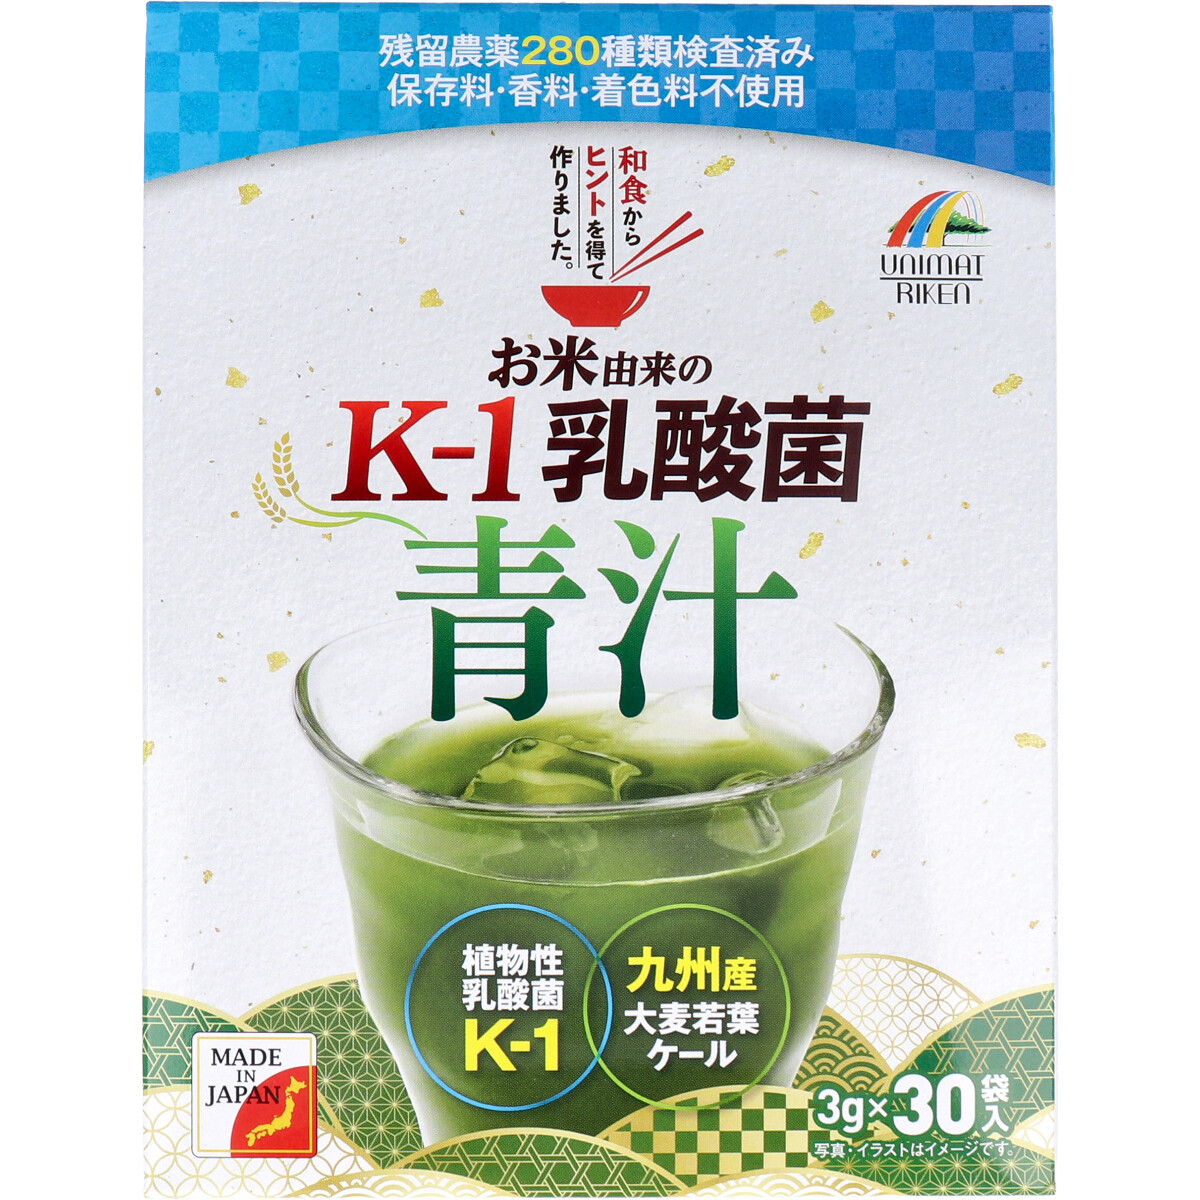 ※[廃盤] お米由来の K-1乳酸菌 青汁 3g×30袋入